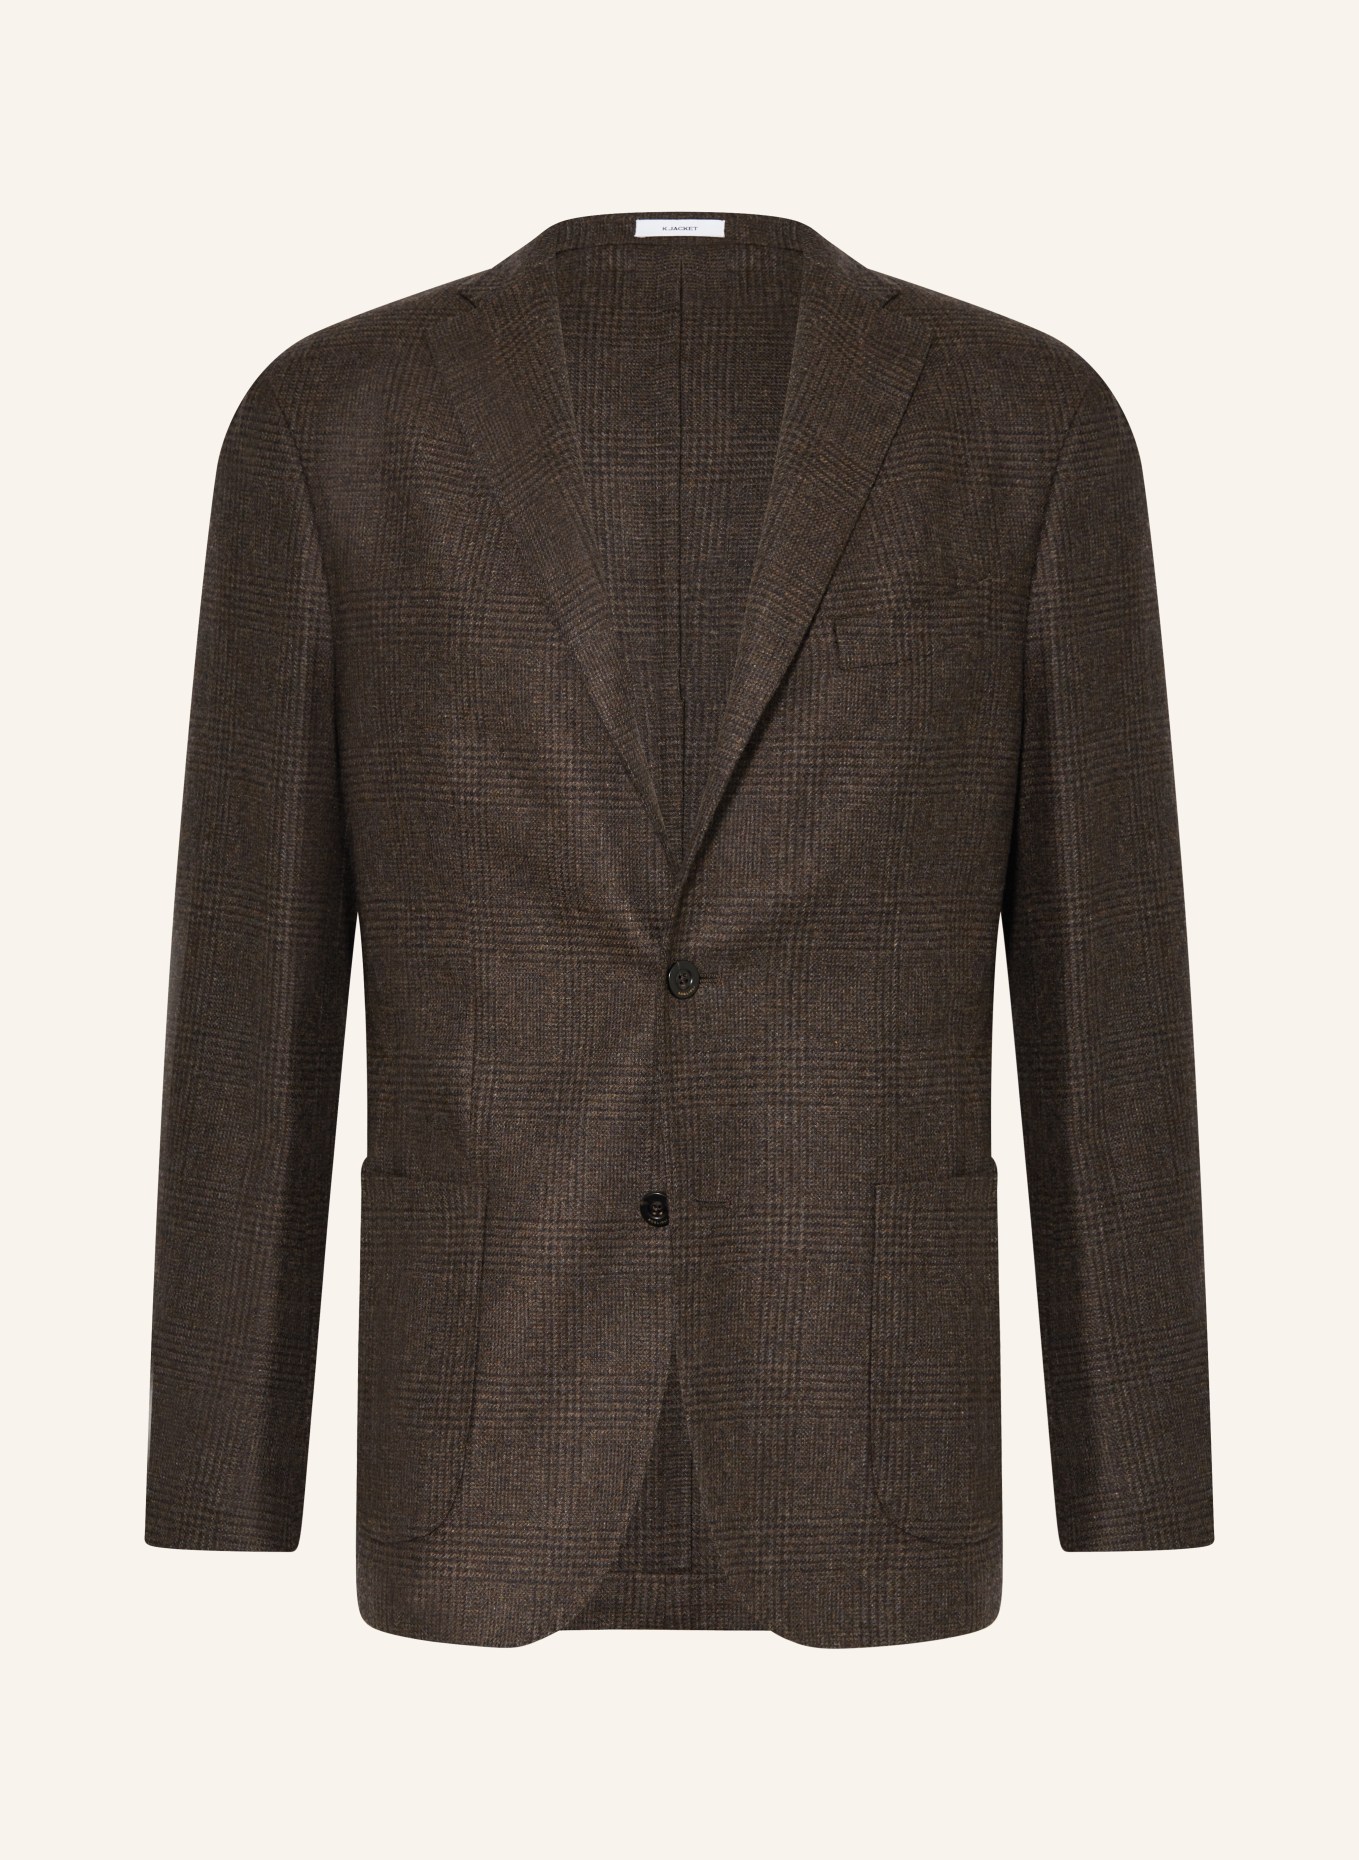 BOGLIOLI Tailored jacket regular fit, Color: DARK BROWN (Image 1)